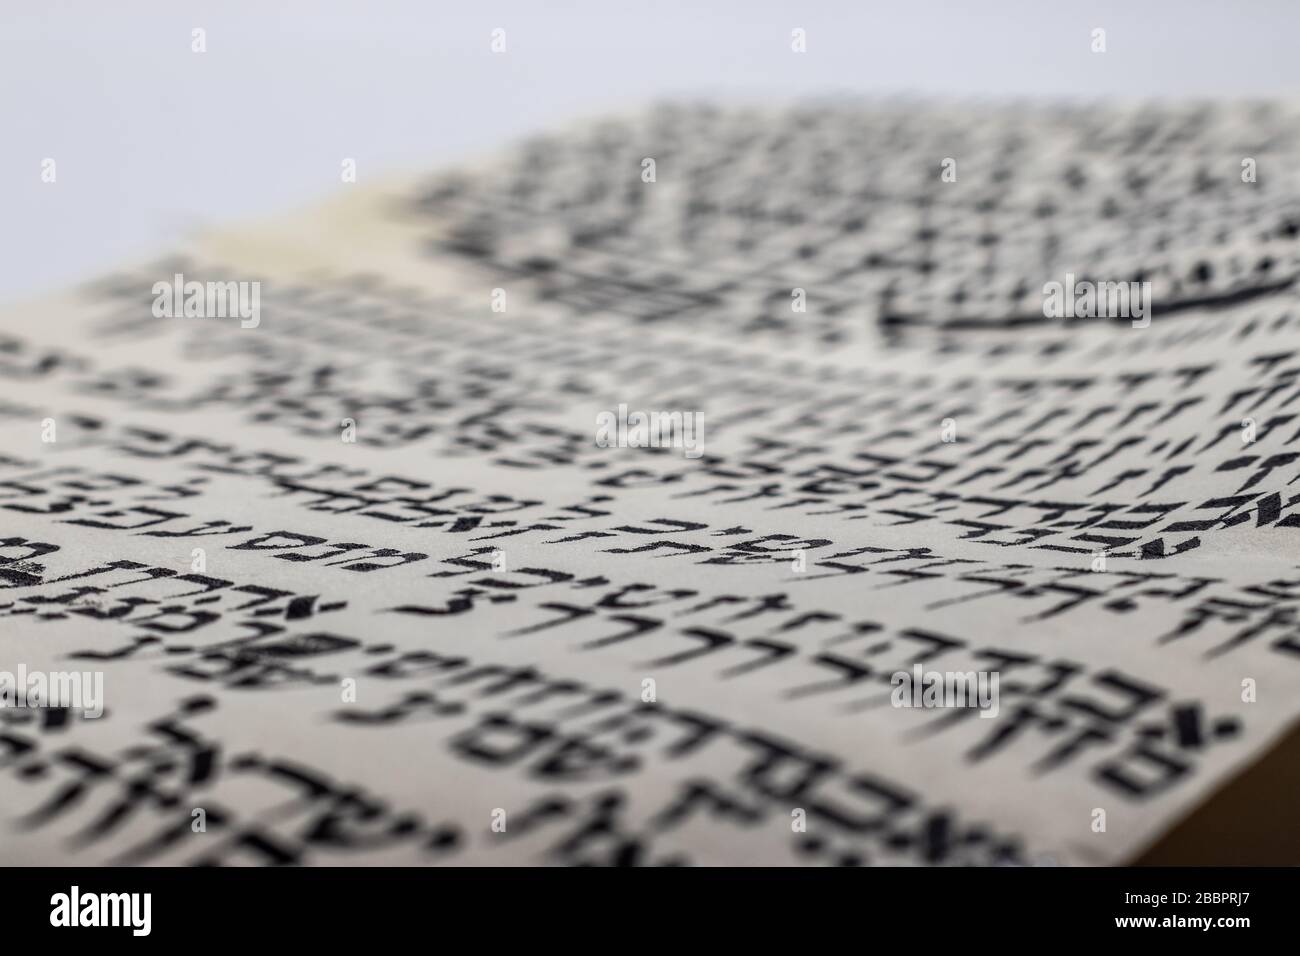 Studio di scrittura ebraica - stile di Torah scroll, (Bibbia) lettere casuali in ebraico sulla pelle. (Editor: Le lettere non hanno alcun significato e sono completamente rand Foto Stock